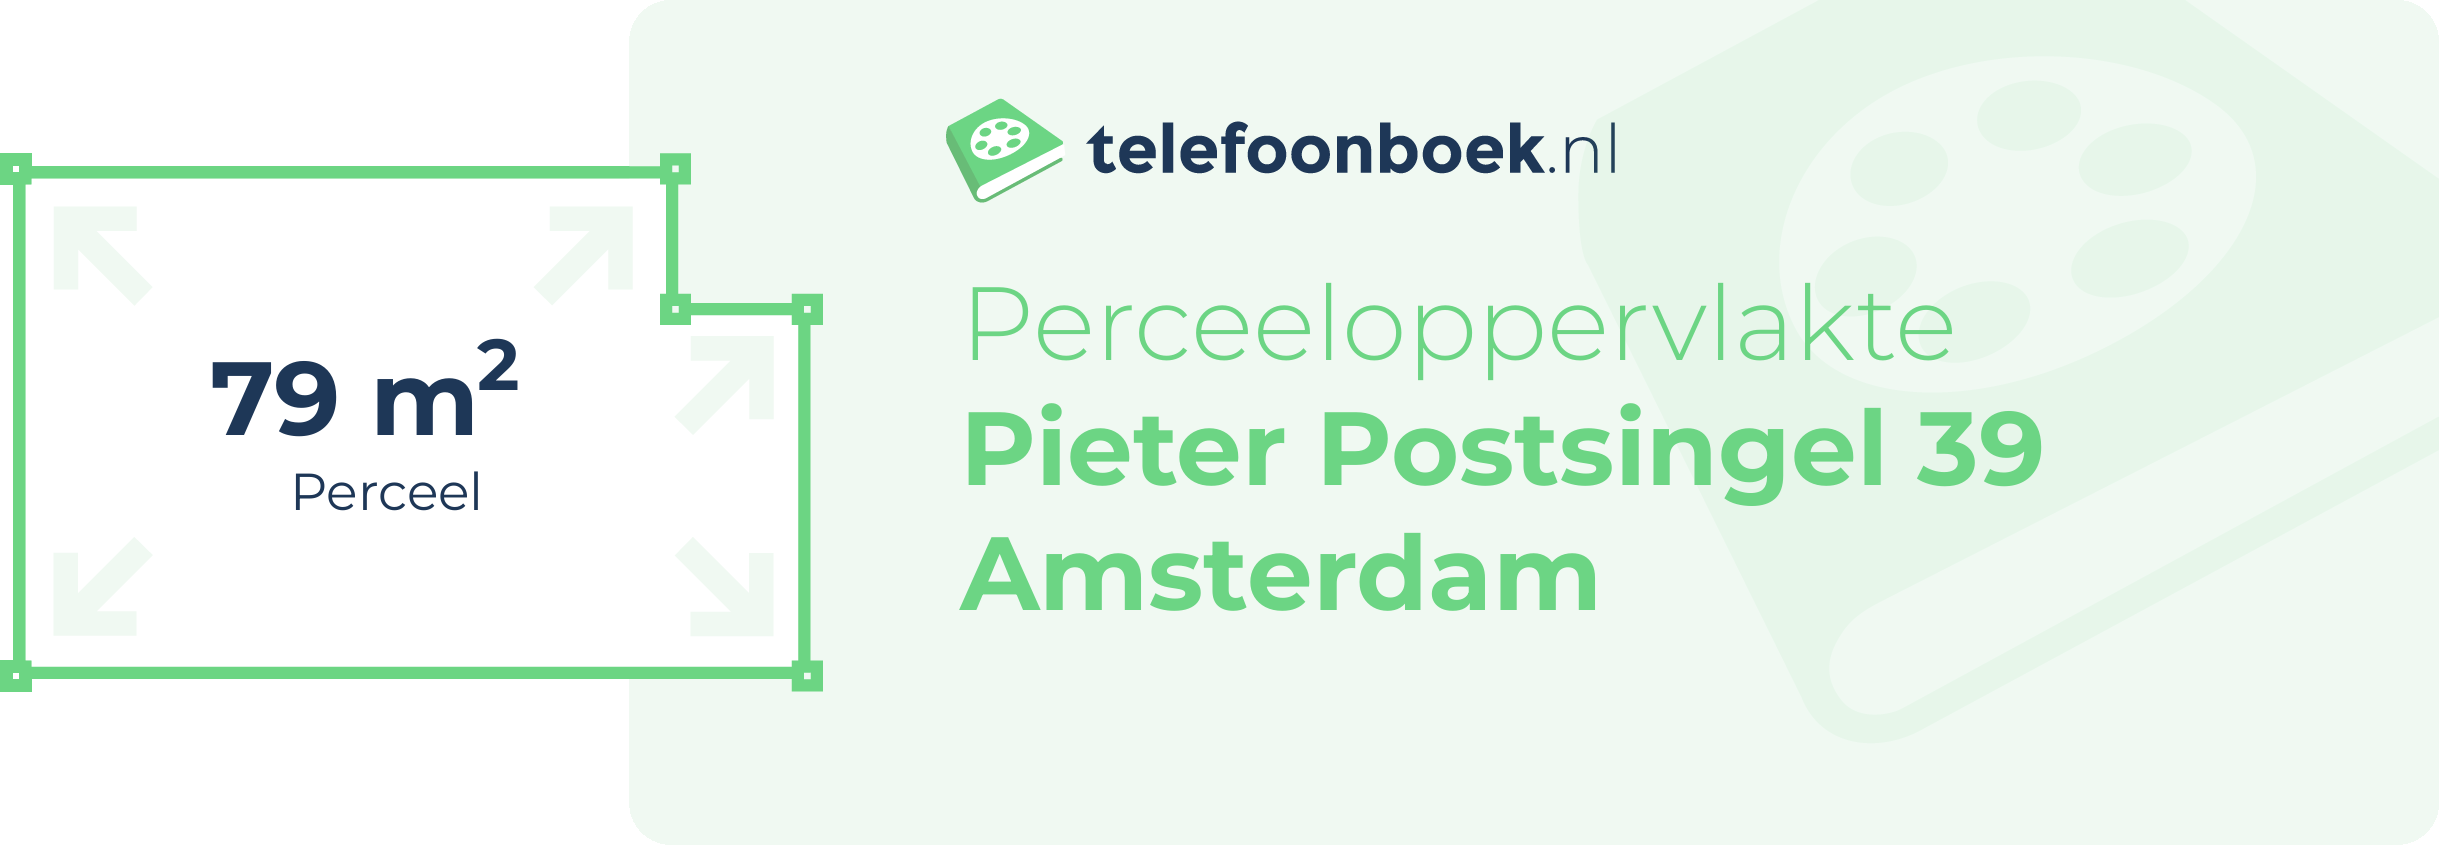 Perceeloppervlakte Pieter Postsingel 39 Amsterdam